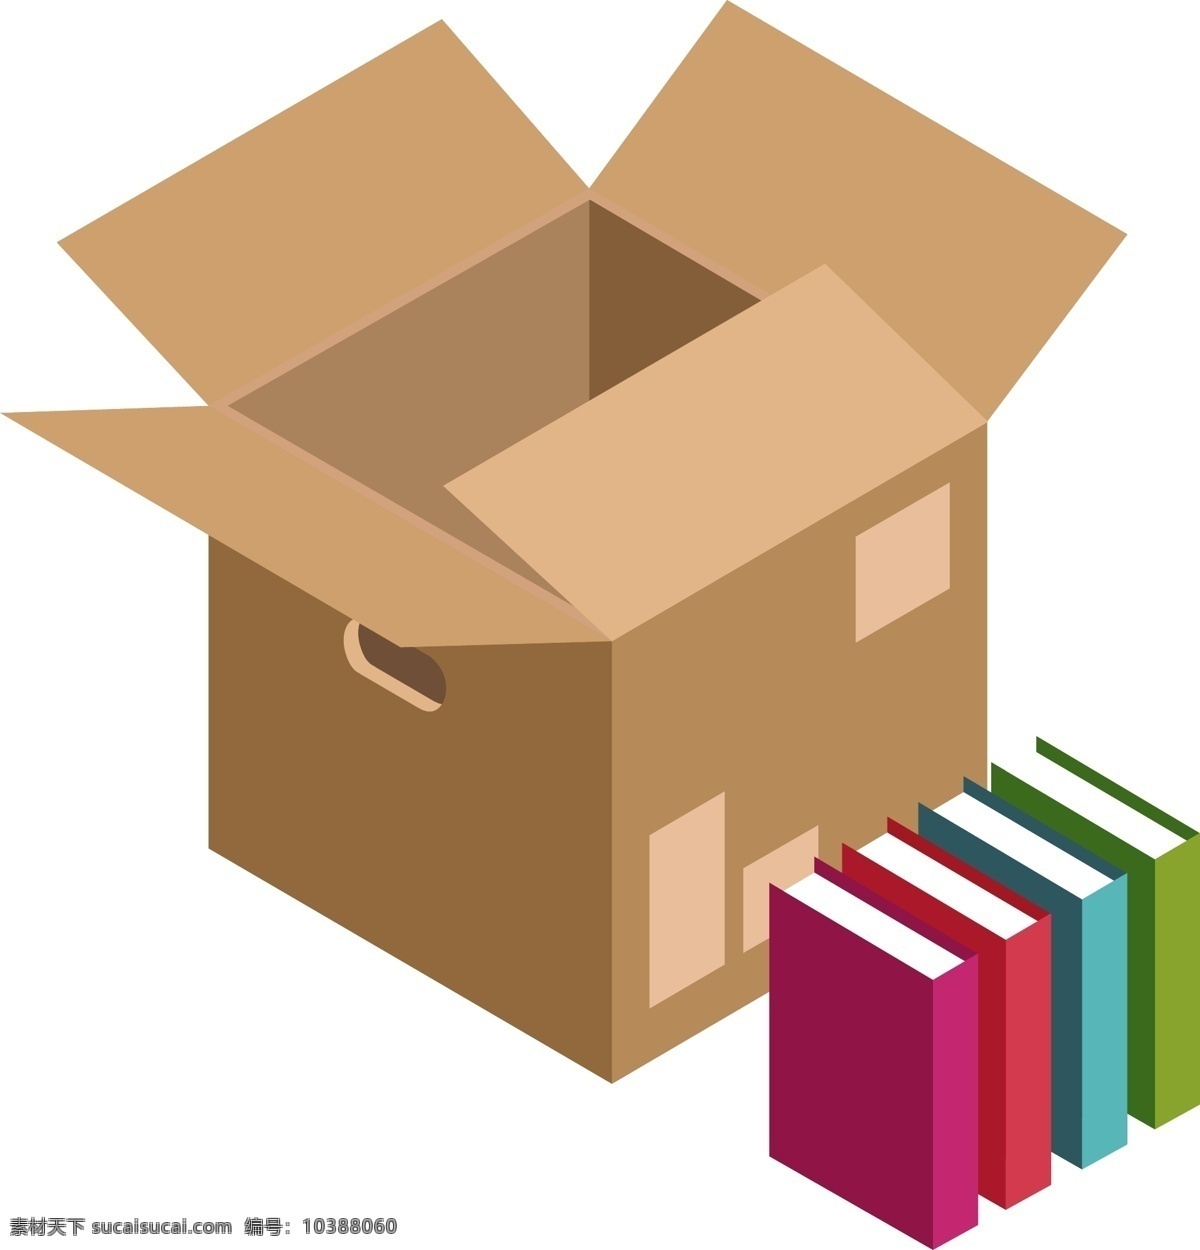 立体 风格 包装箱 元素 商用 快递 书籍 购物 纸箱 邮寄 运输